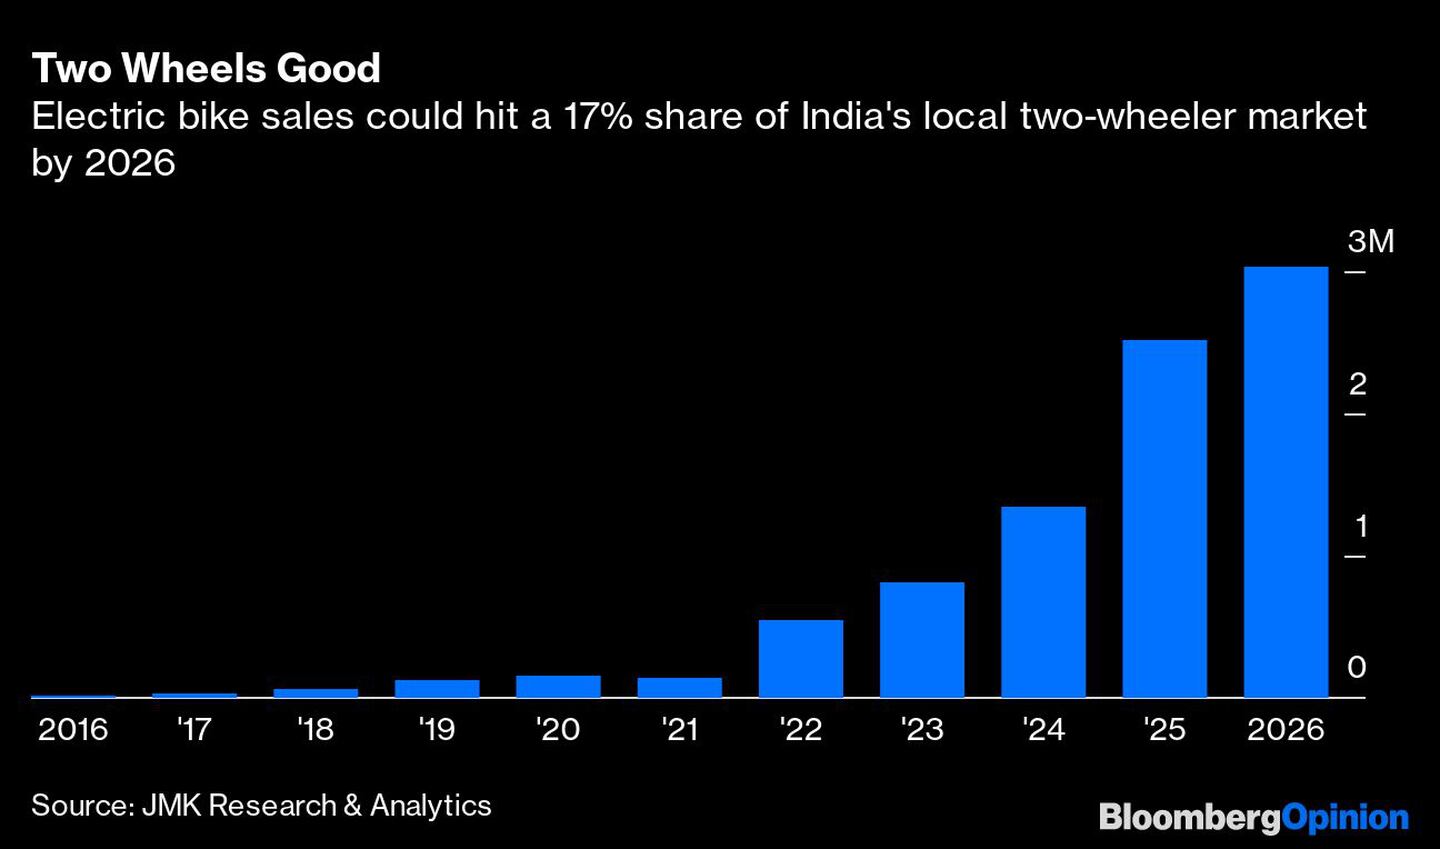 Las dos ruedas son buenas
Las ventas de bicicletas eléctricas podrían alcanzar una cuota del 17% del mercado local de dos ruedas en la India en 2026dfd